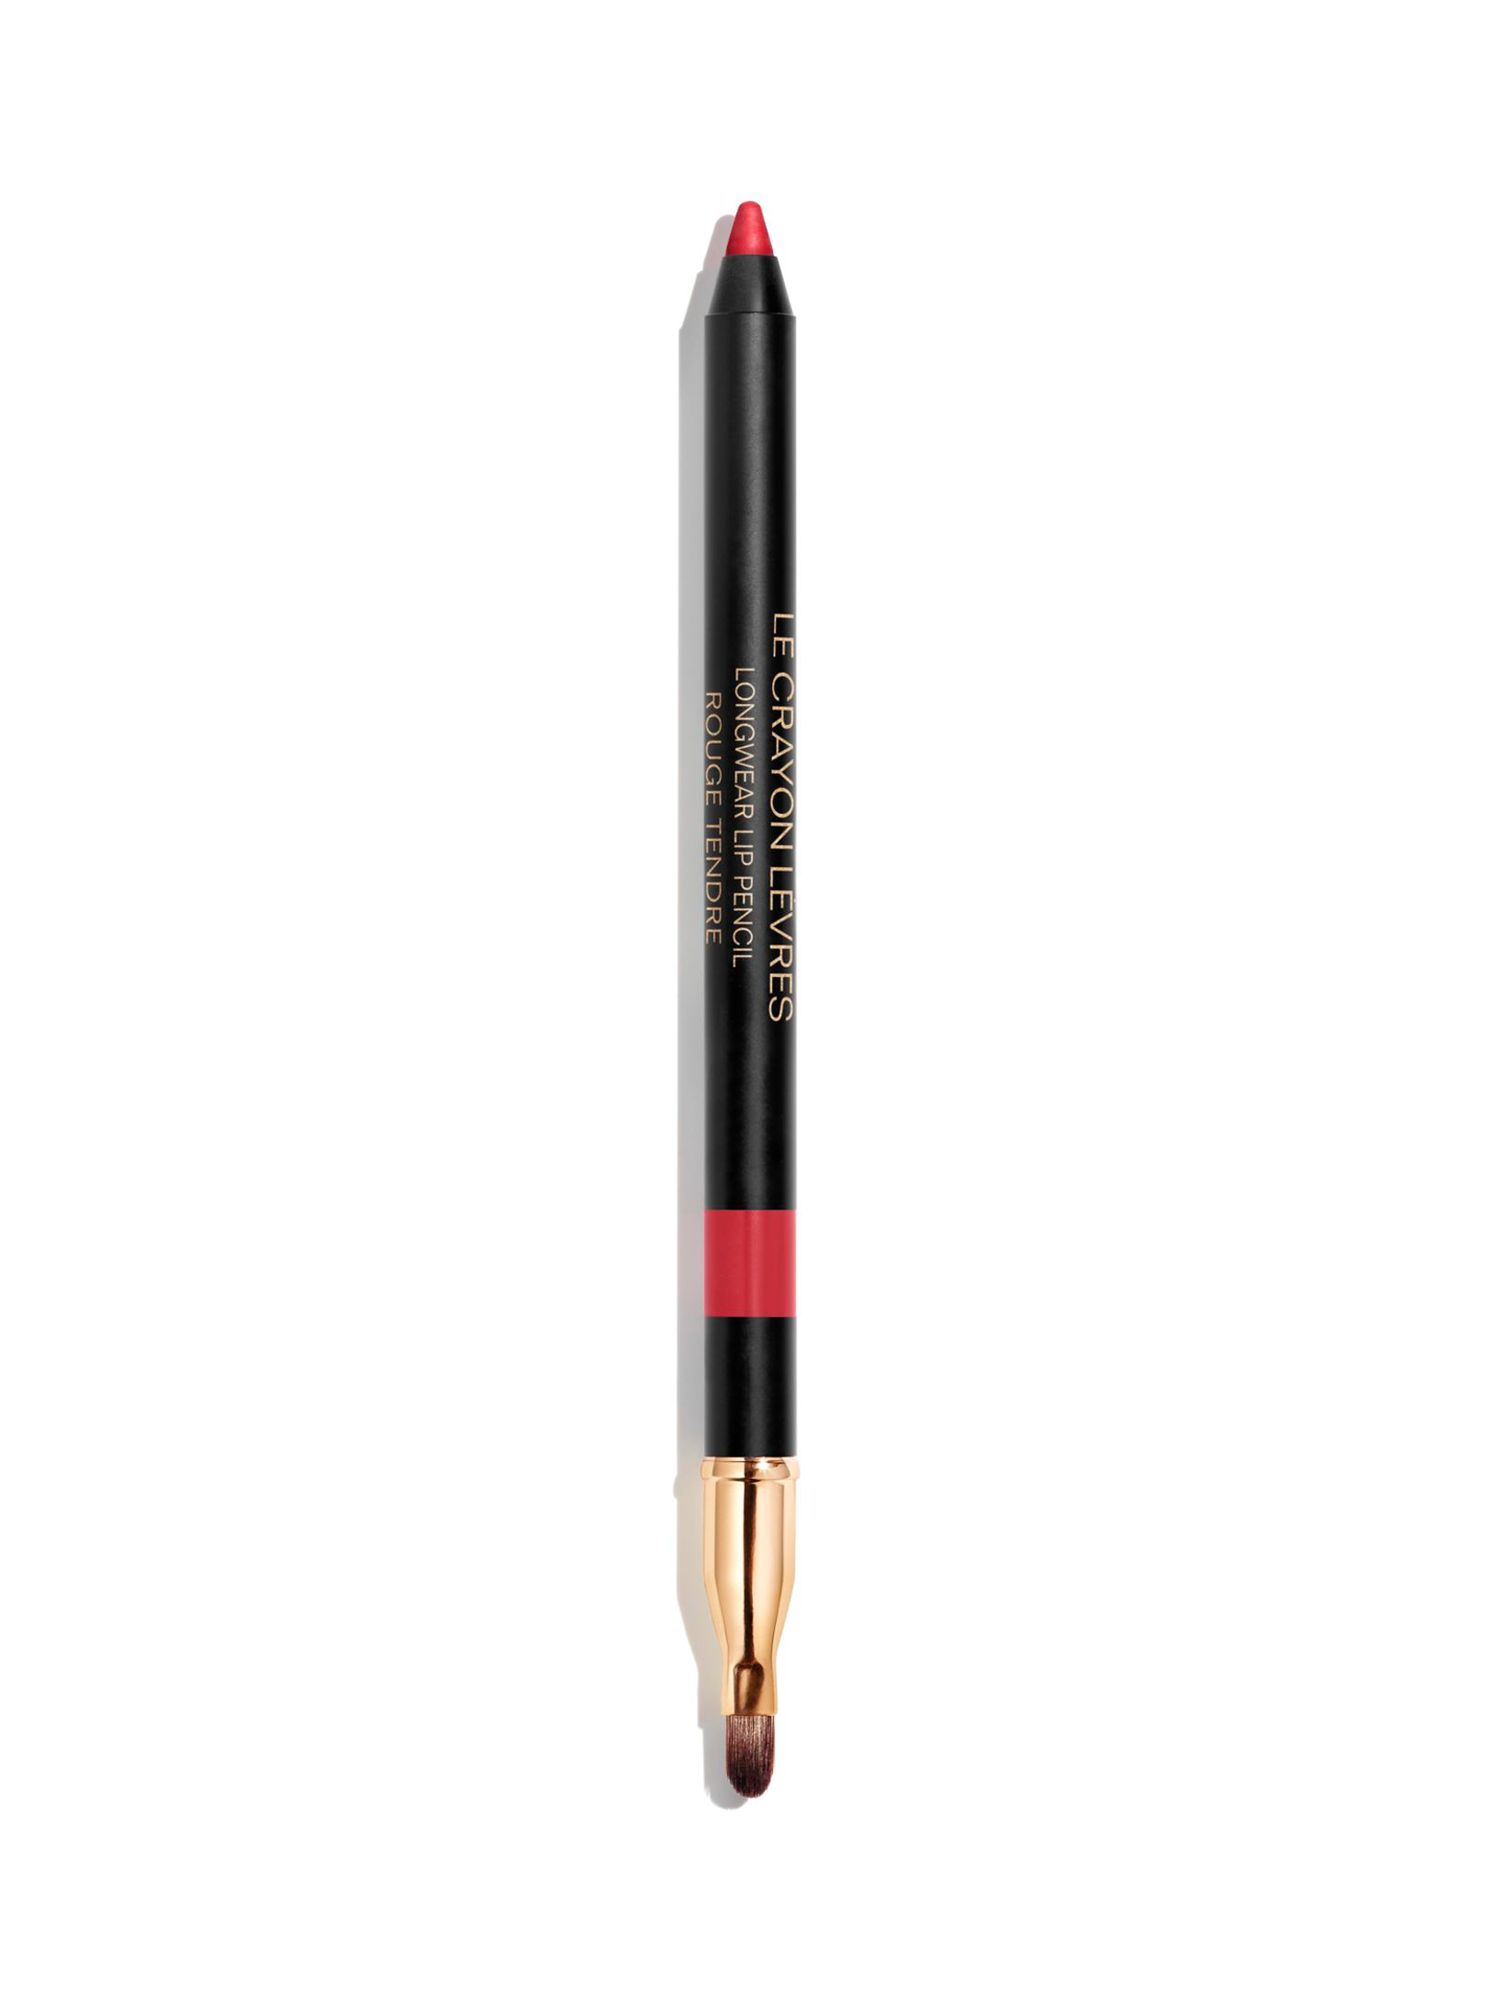 CHANEL Le Crayon Lèvres Longwear Lip Pencil, 174 Rouge Tendre 1